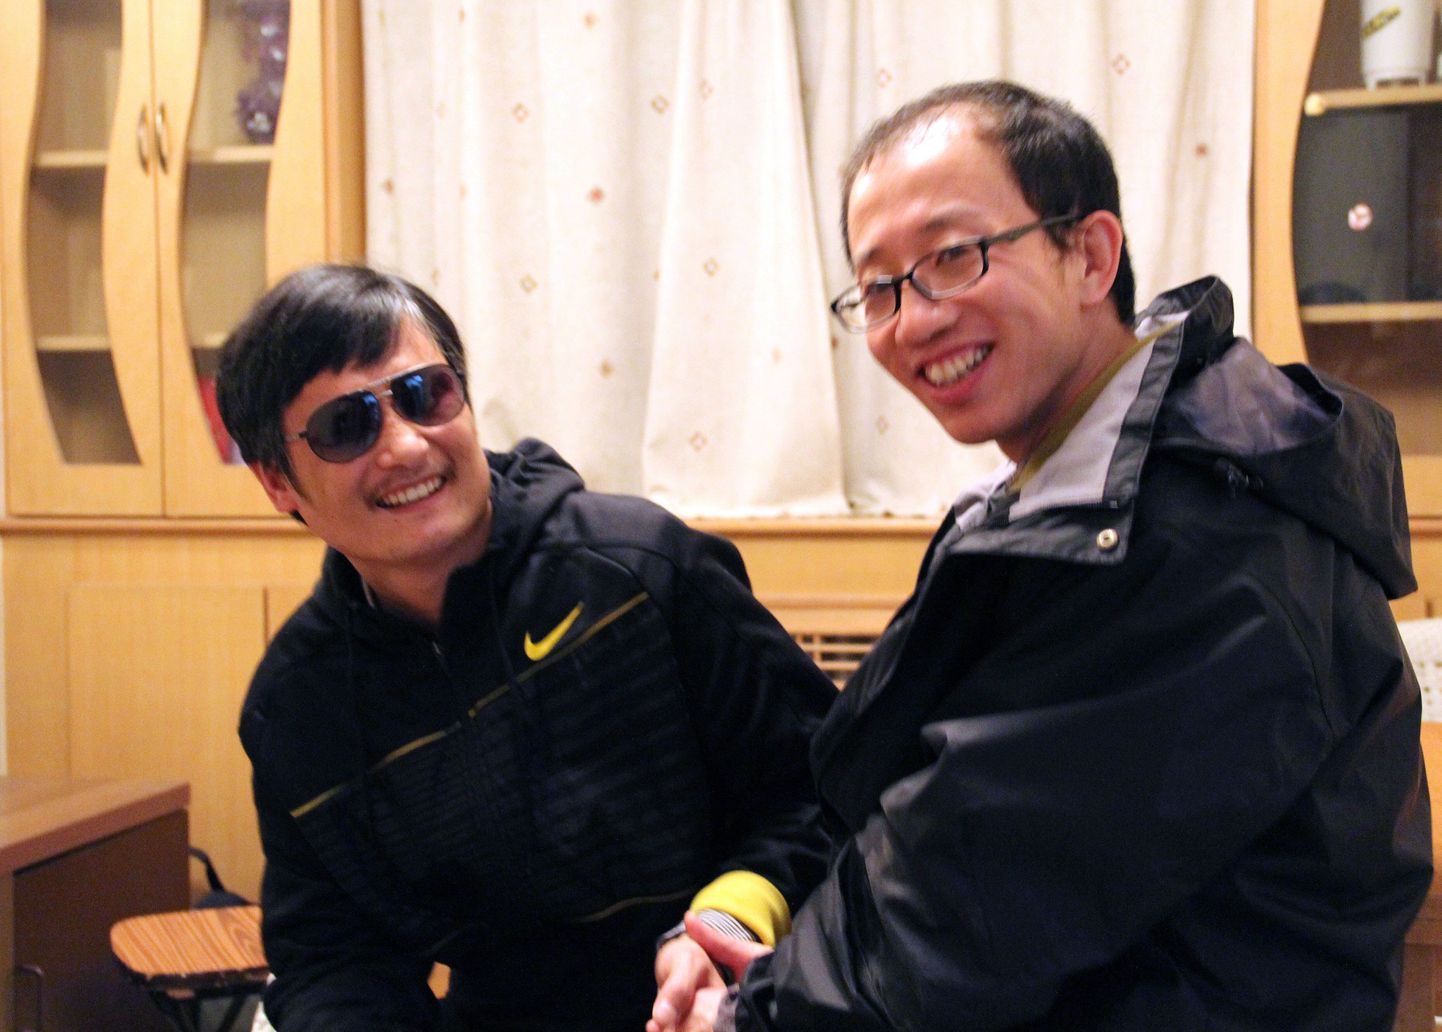 Hiina valitsuse kriitik Hu Jia (paremal) koos pimeda teisitimõtleja Chen Guangchengiga pärast viimase põgenemist.